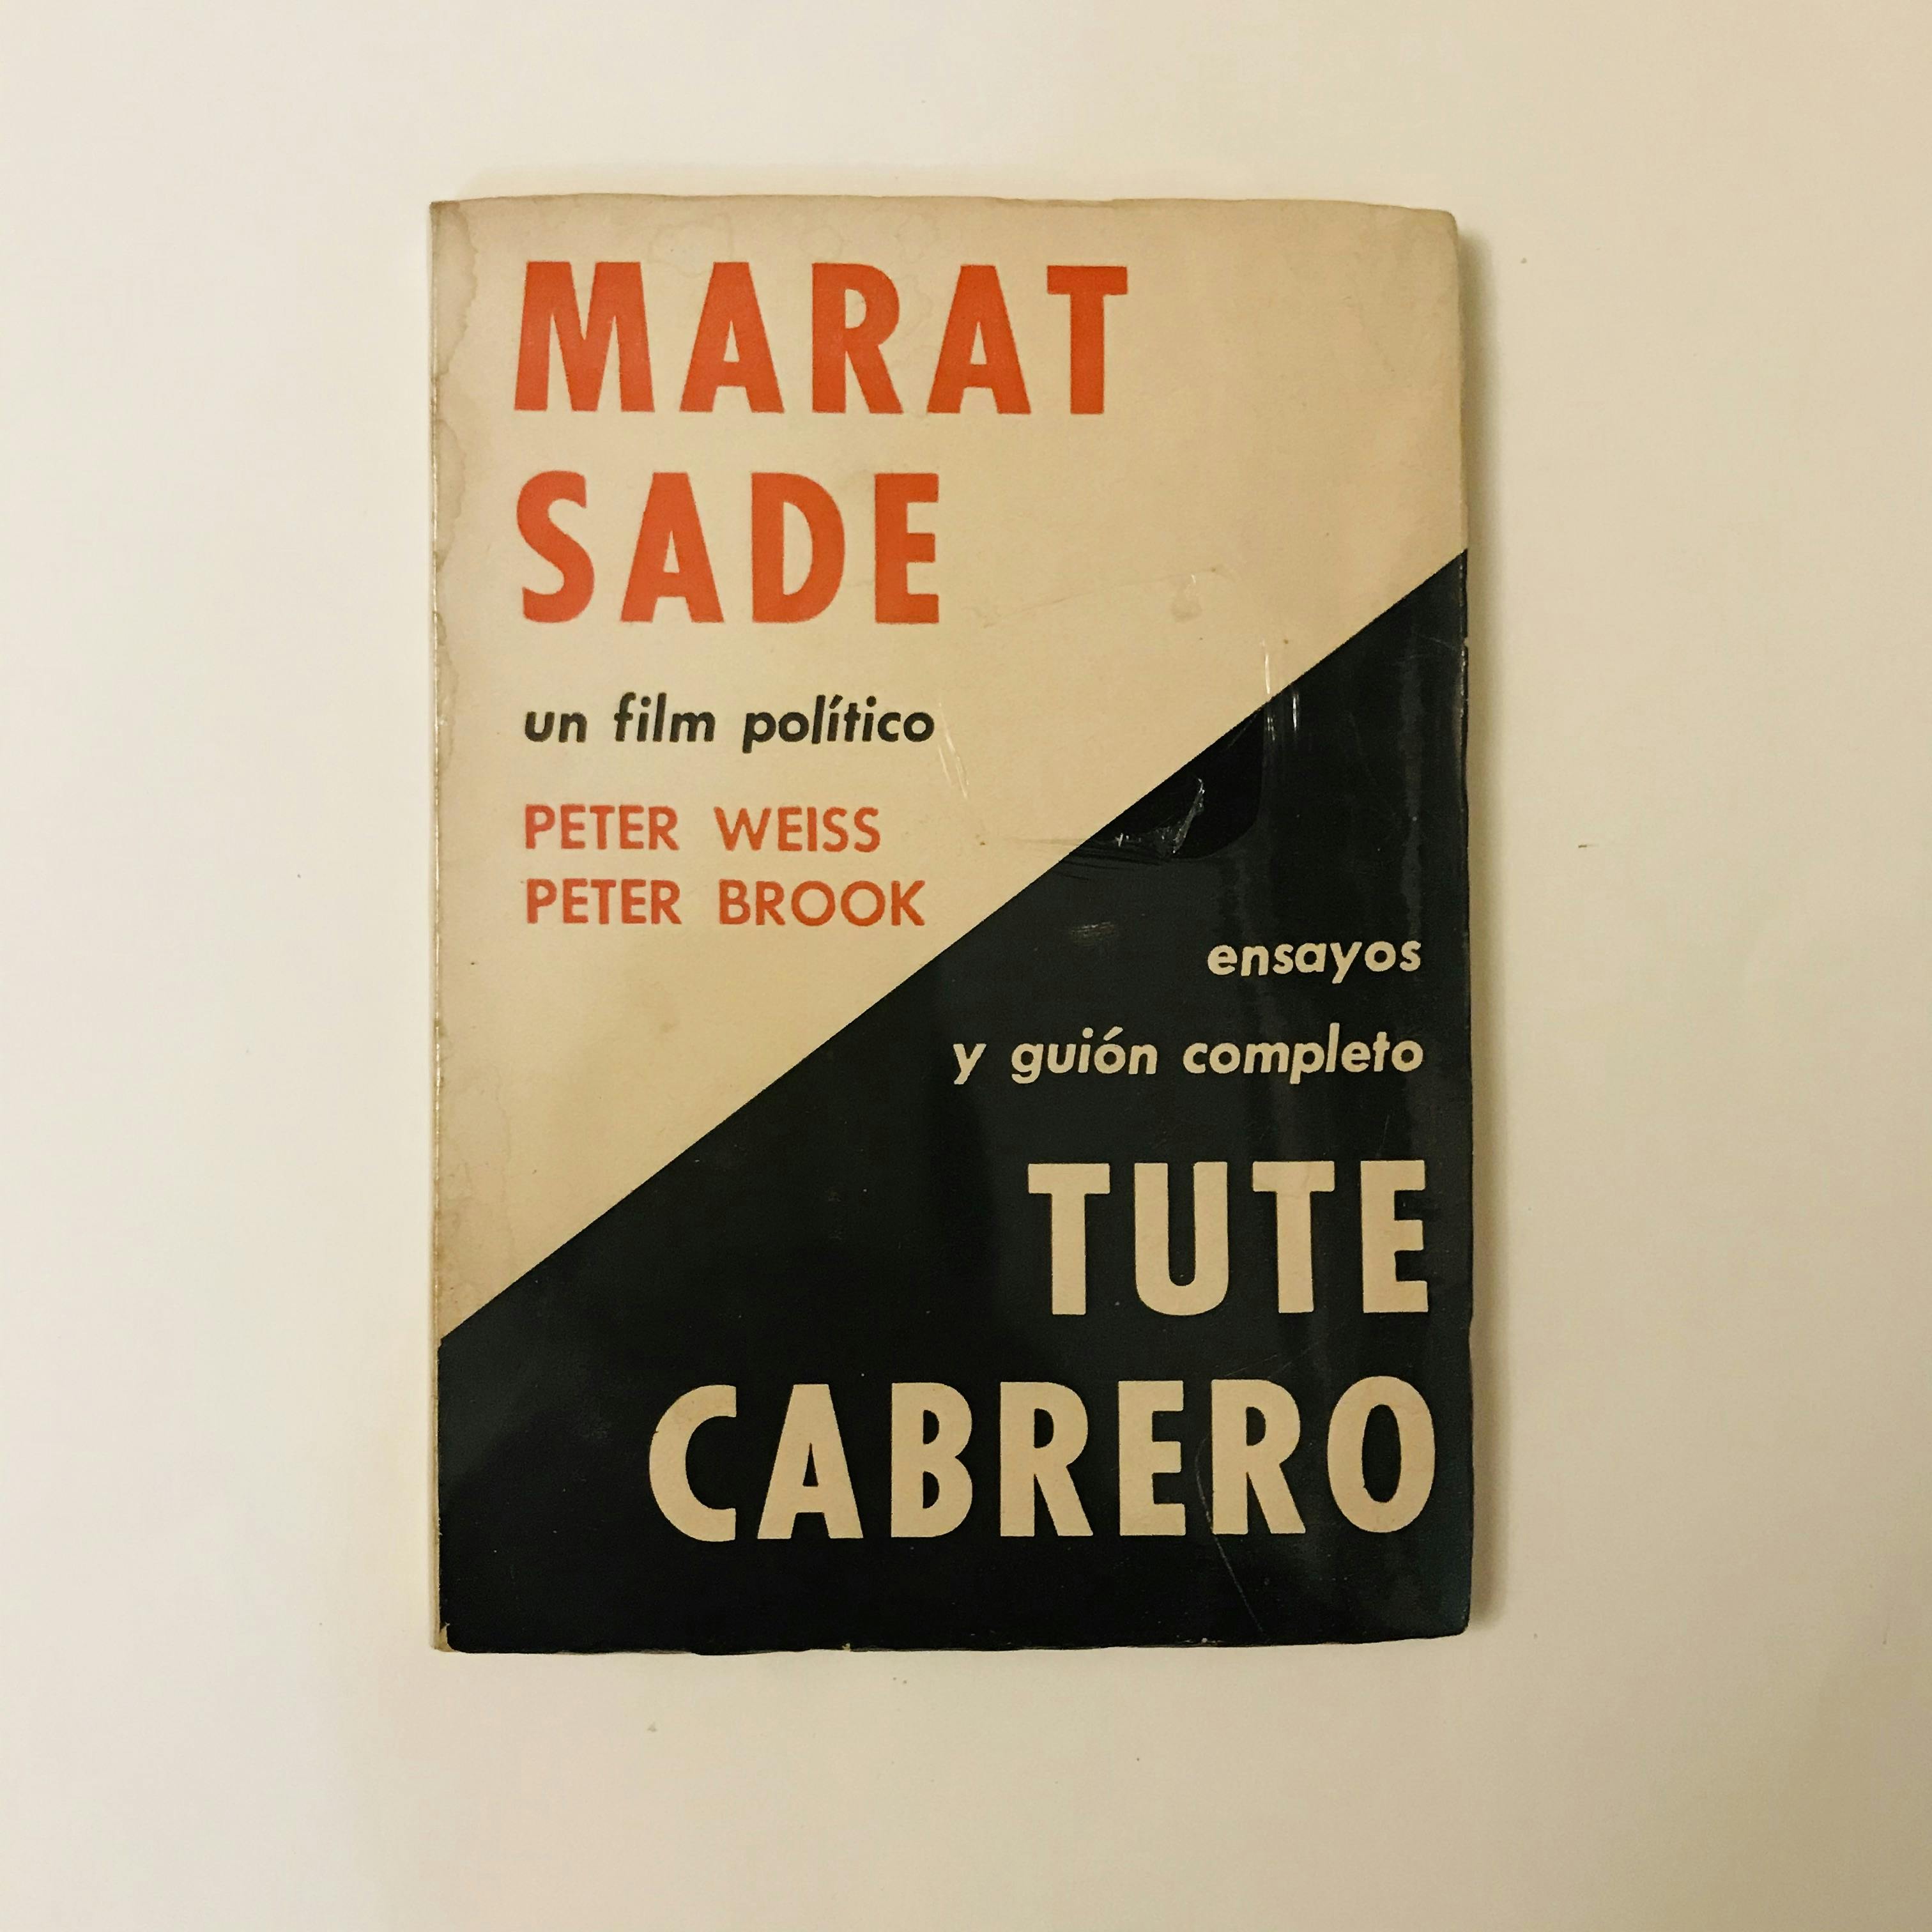 "MARAT - SADE/TUTE CABRERO"